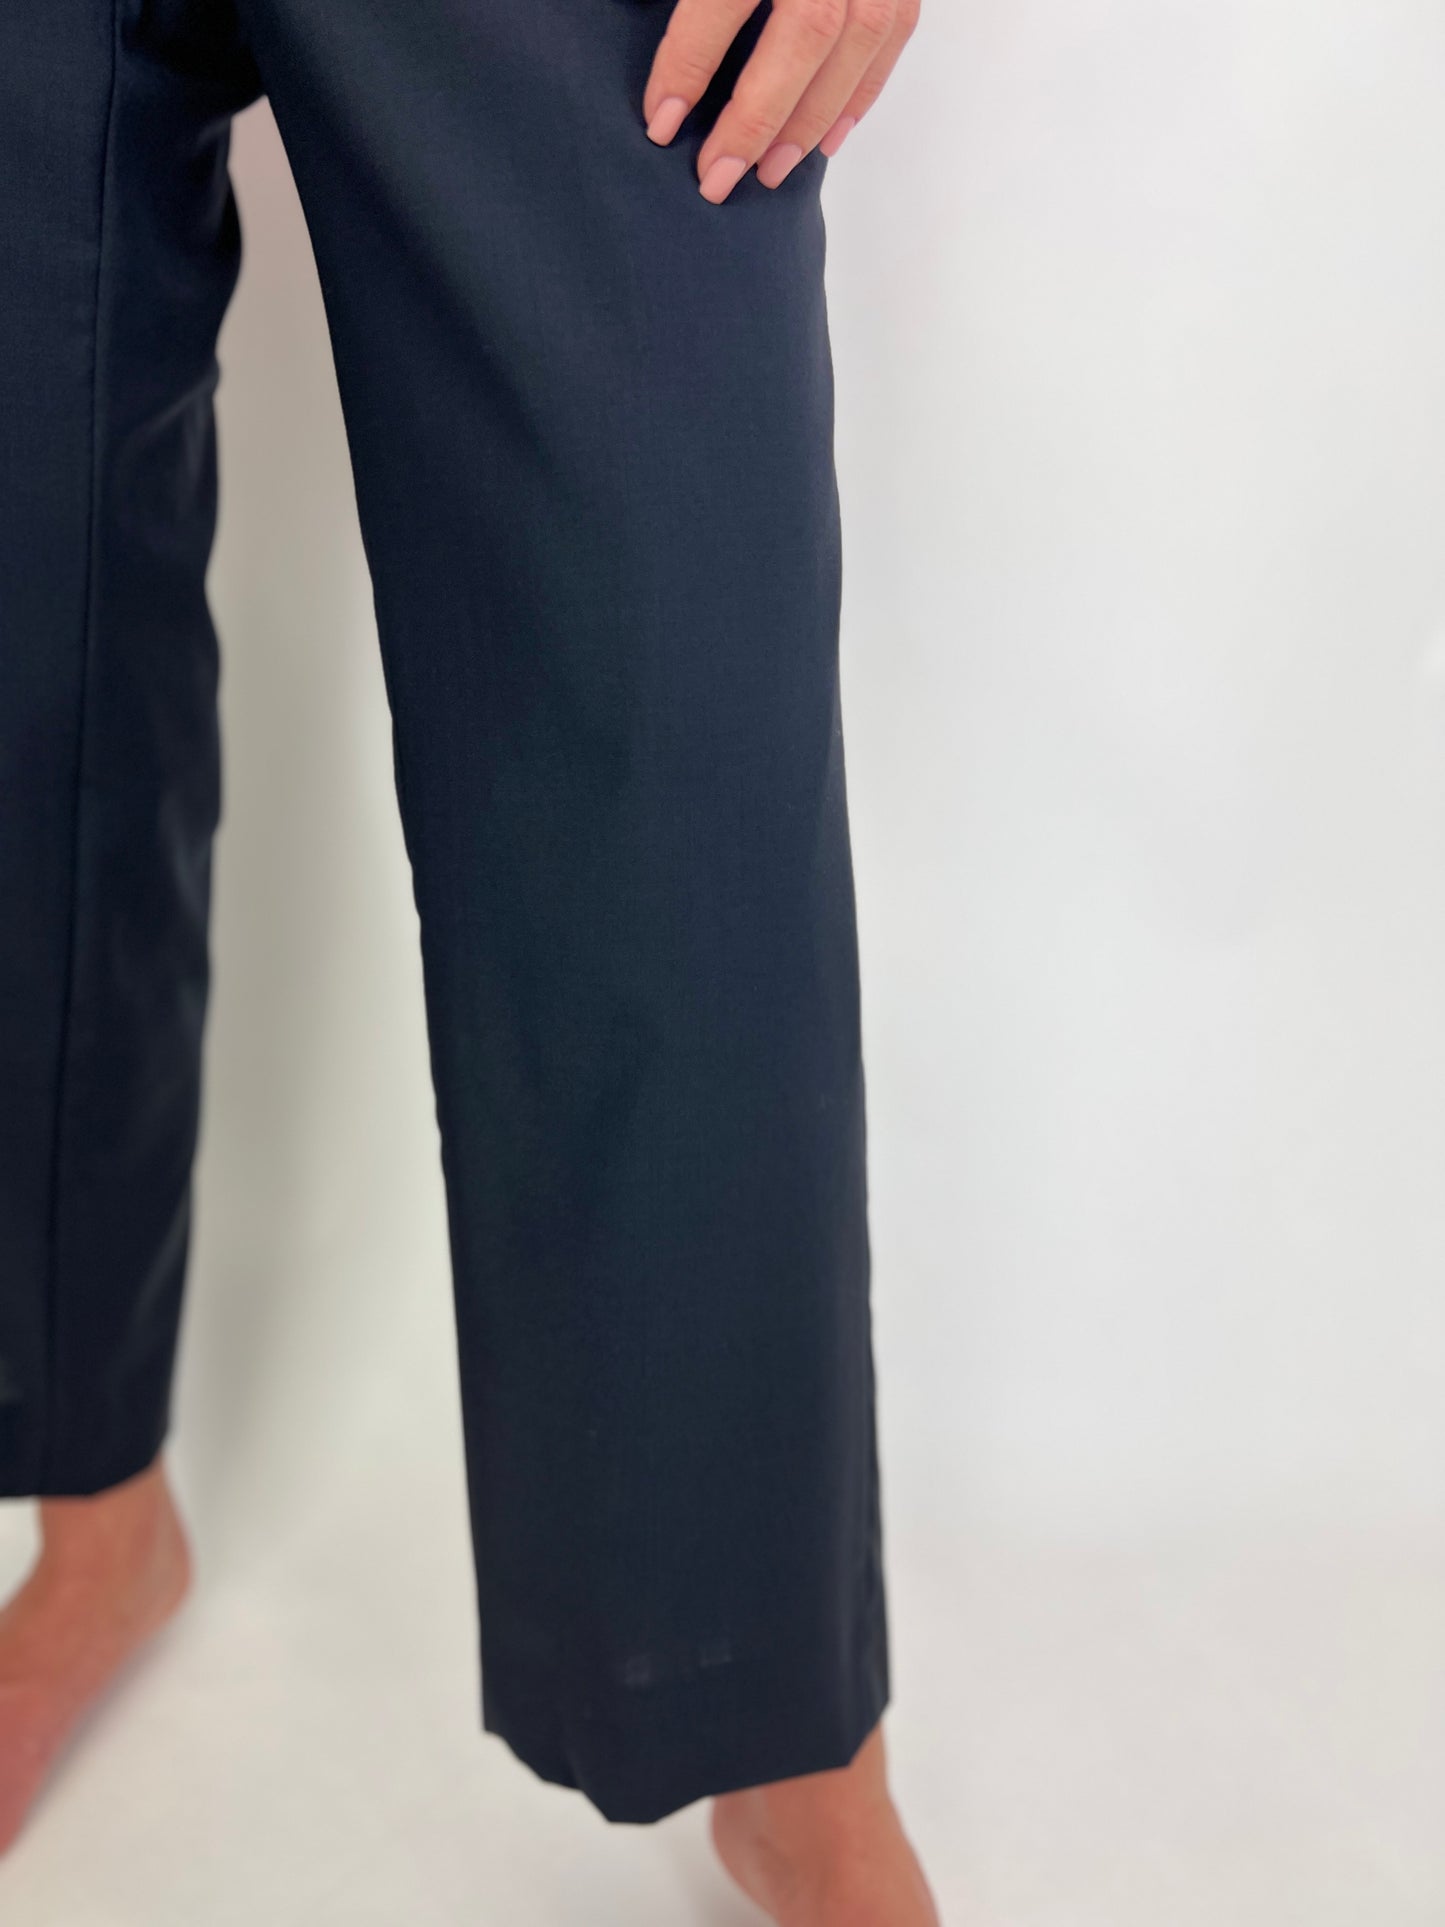 Pantaloni Navy lana pura extrafina